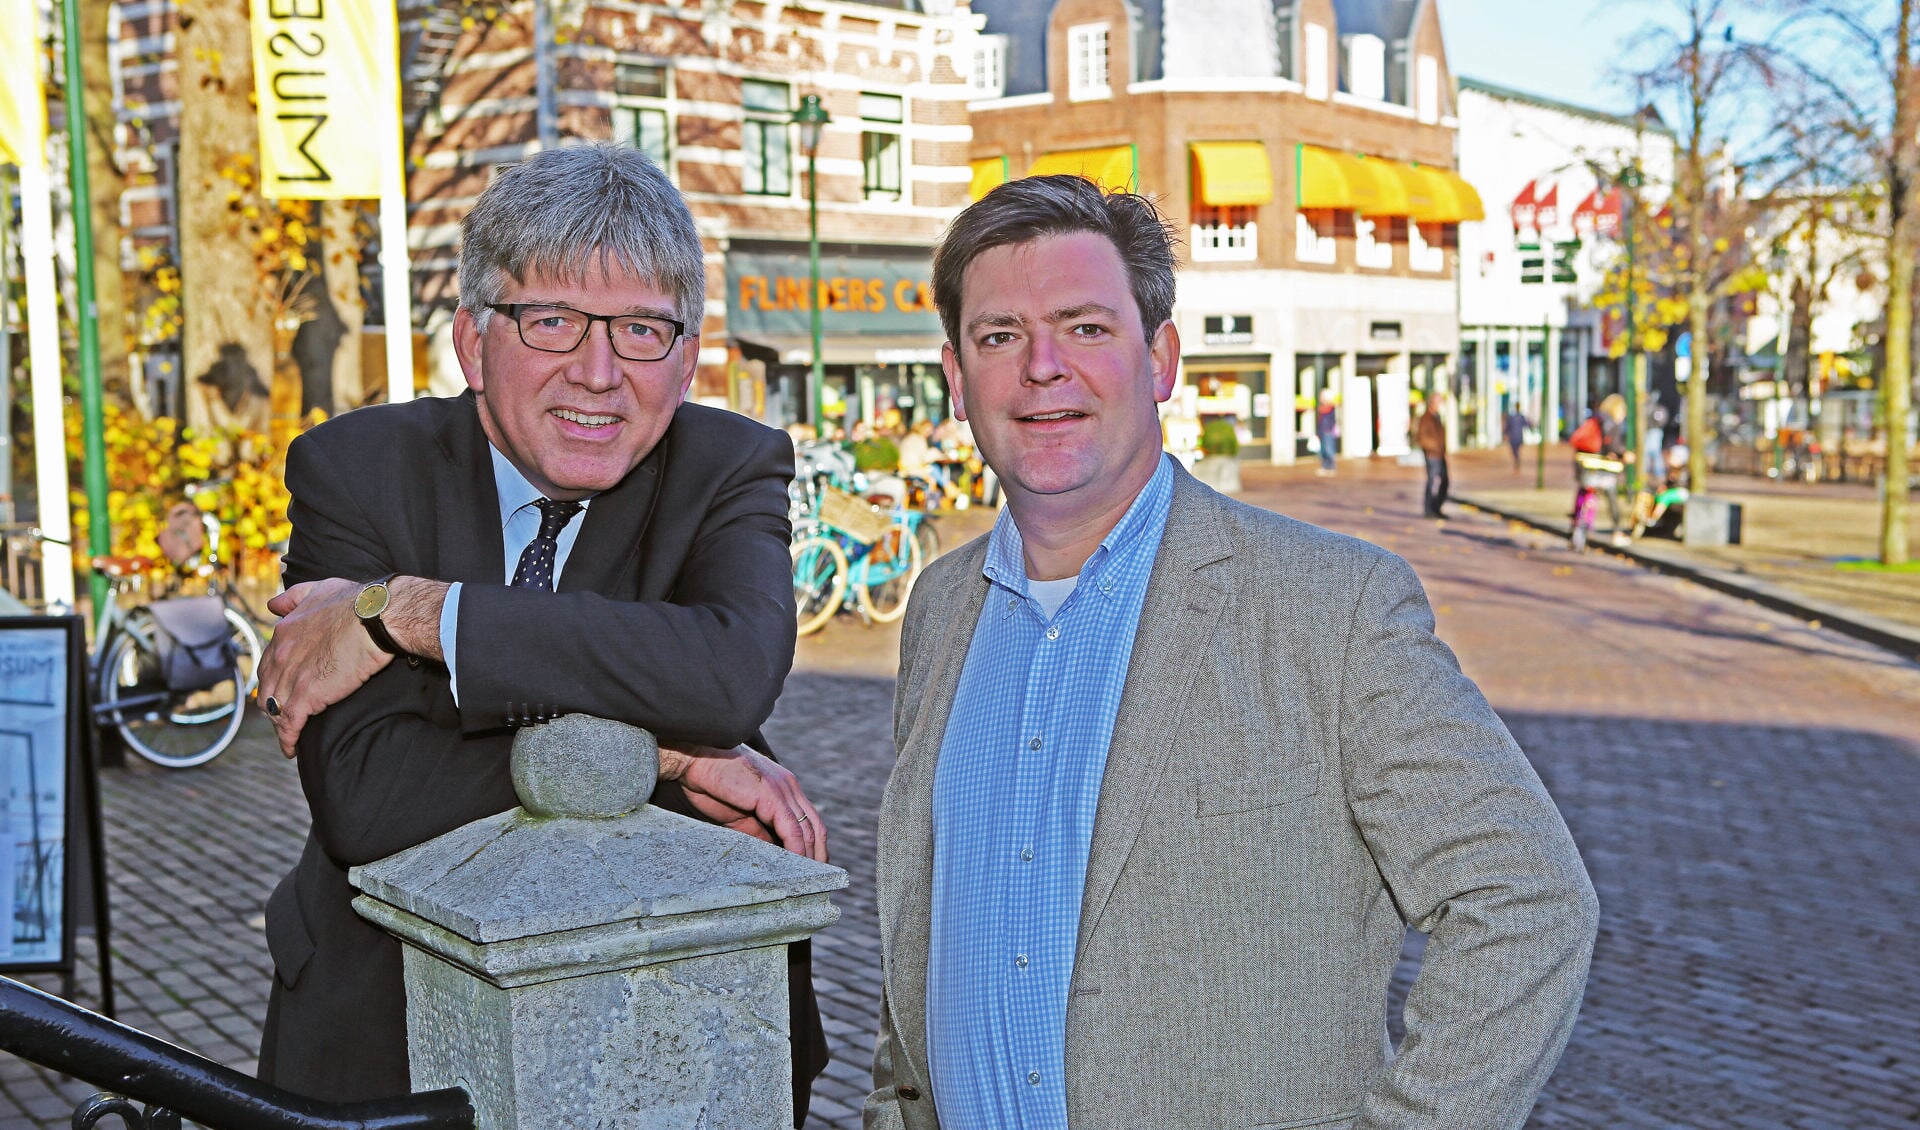 De wethouders Wimar Jaeger en Floris Voorink